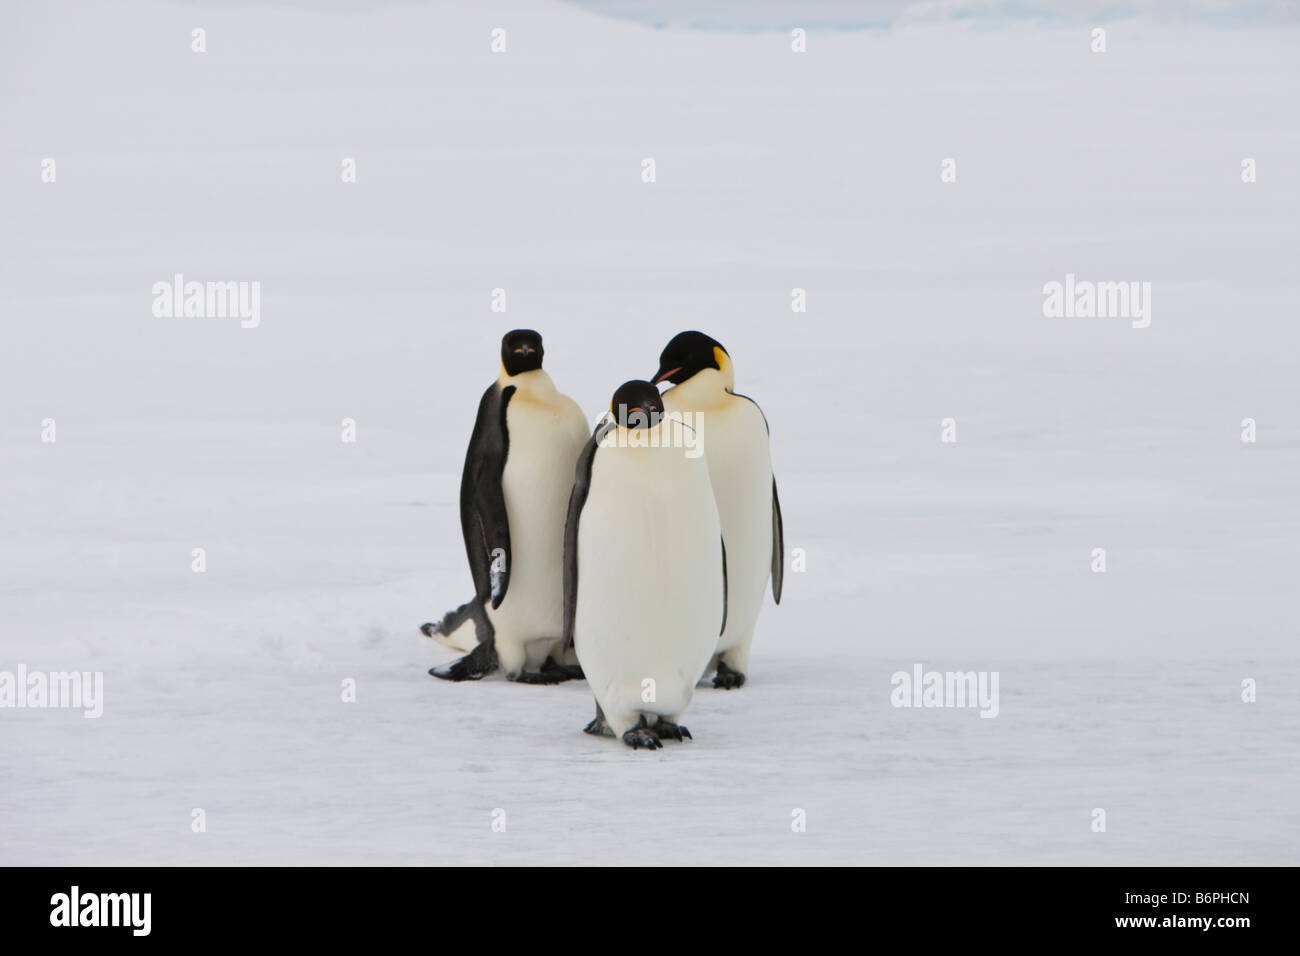 Gruppo di 3 pinguini dell'Imperatore che si trovano in piedi insieme in avanti sul ghiaccio veloce coperto di neve in Antartide. Sfondo bianco Foto Stock